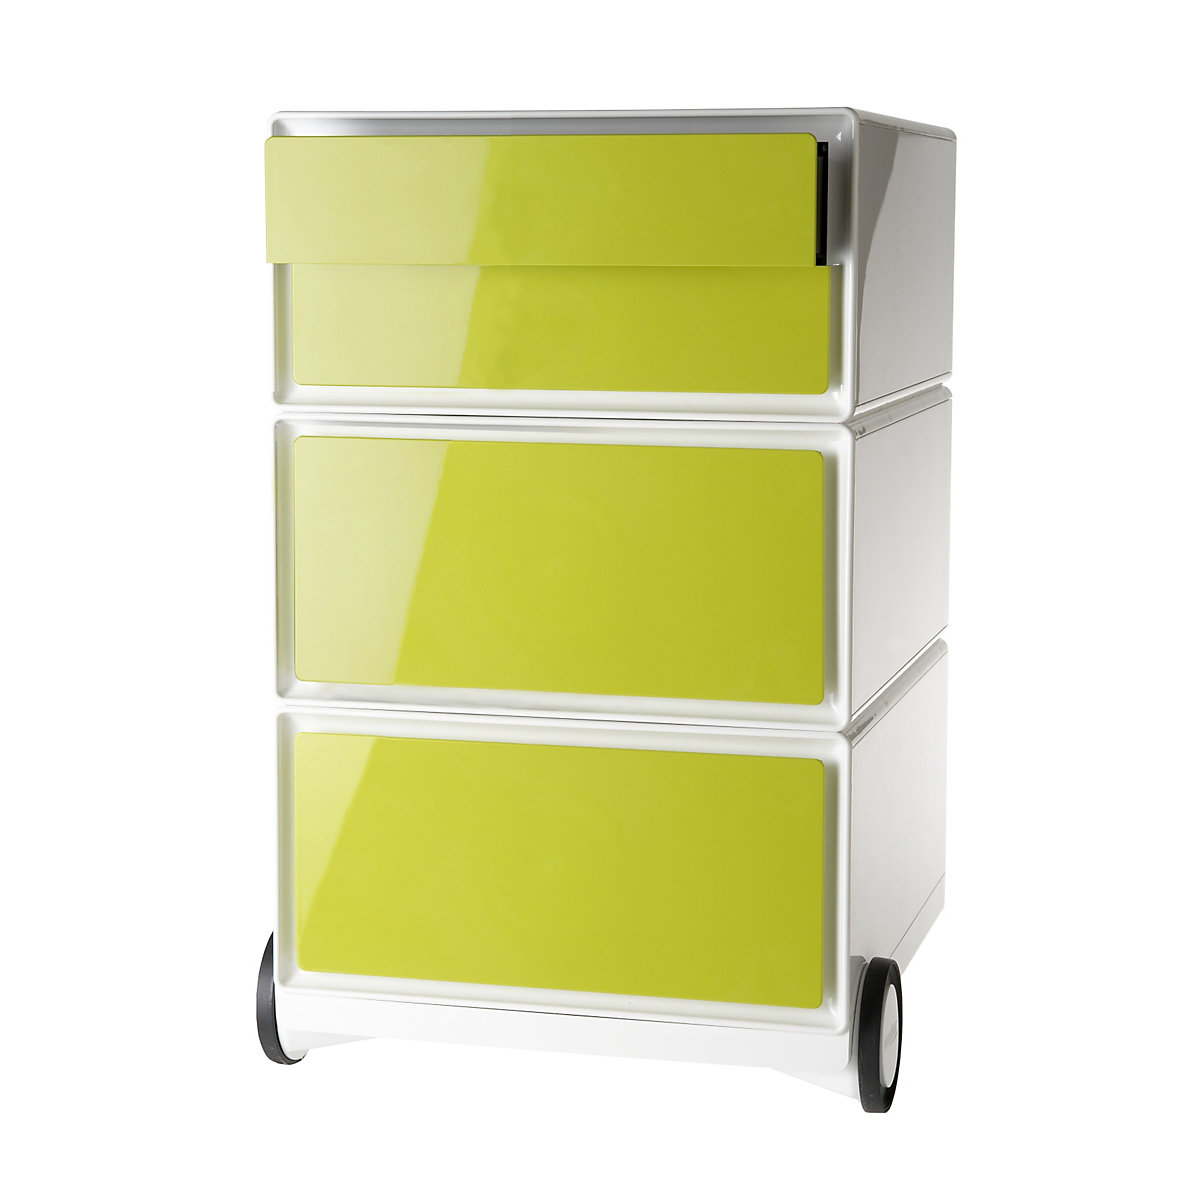 Pomični predalnik easyBox® – Paperflow, 2 predala, 2 nižja predala, bel / zelen-7